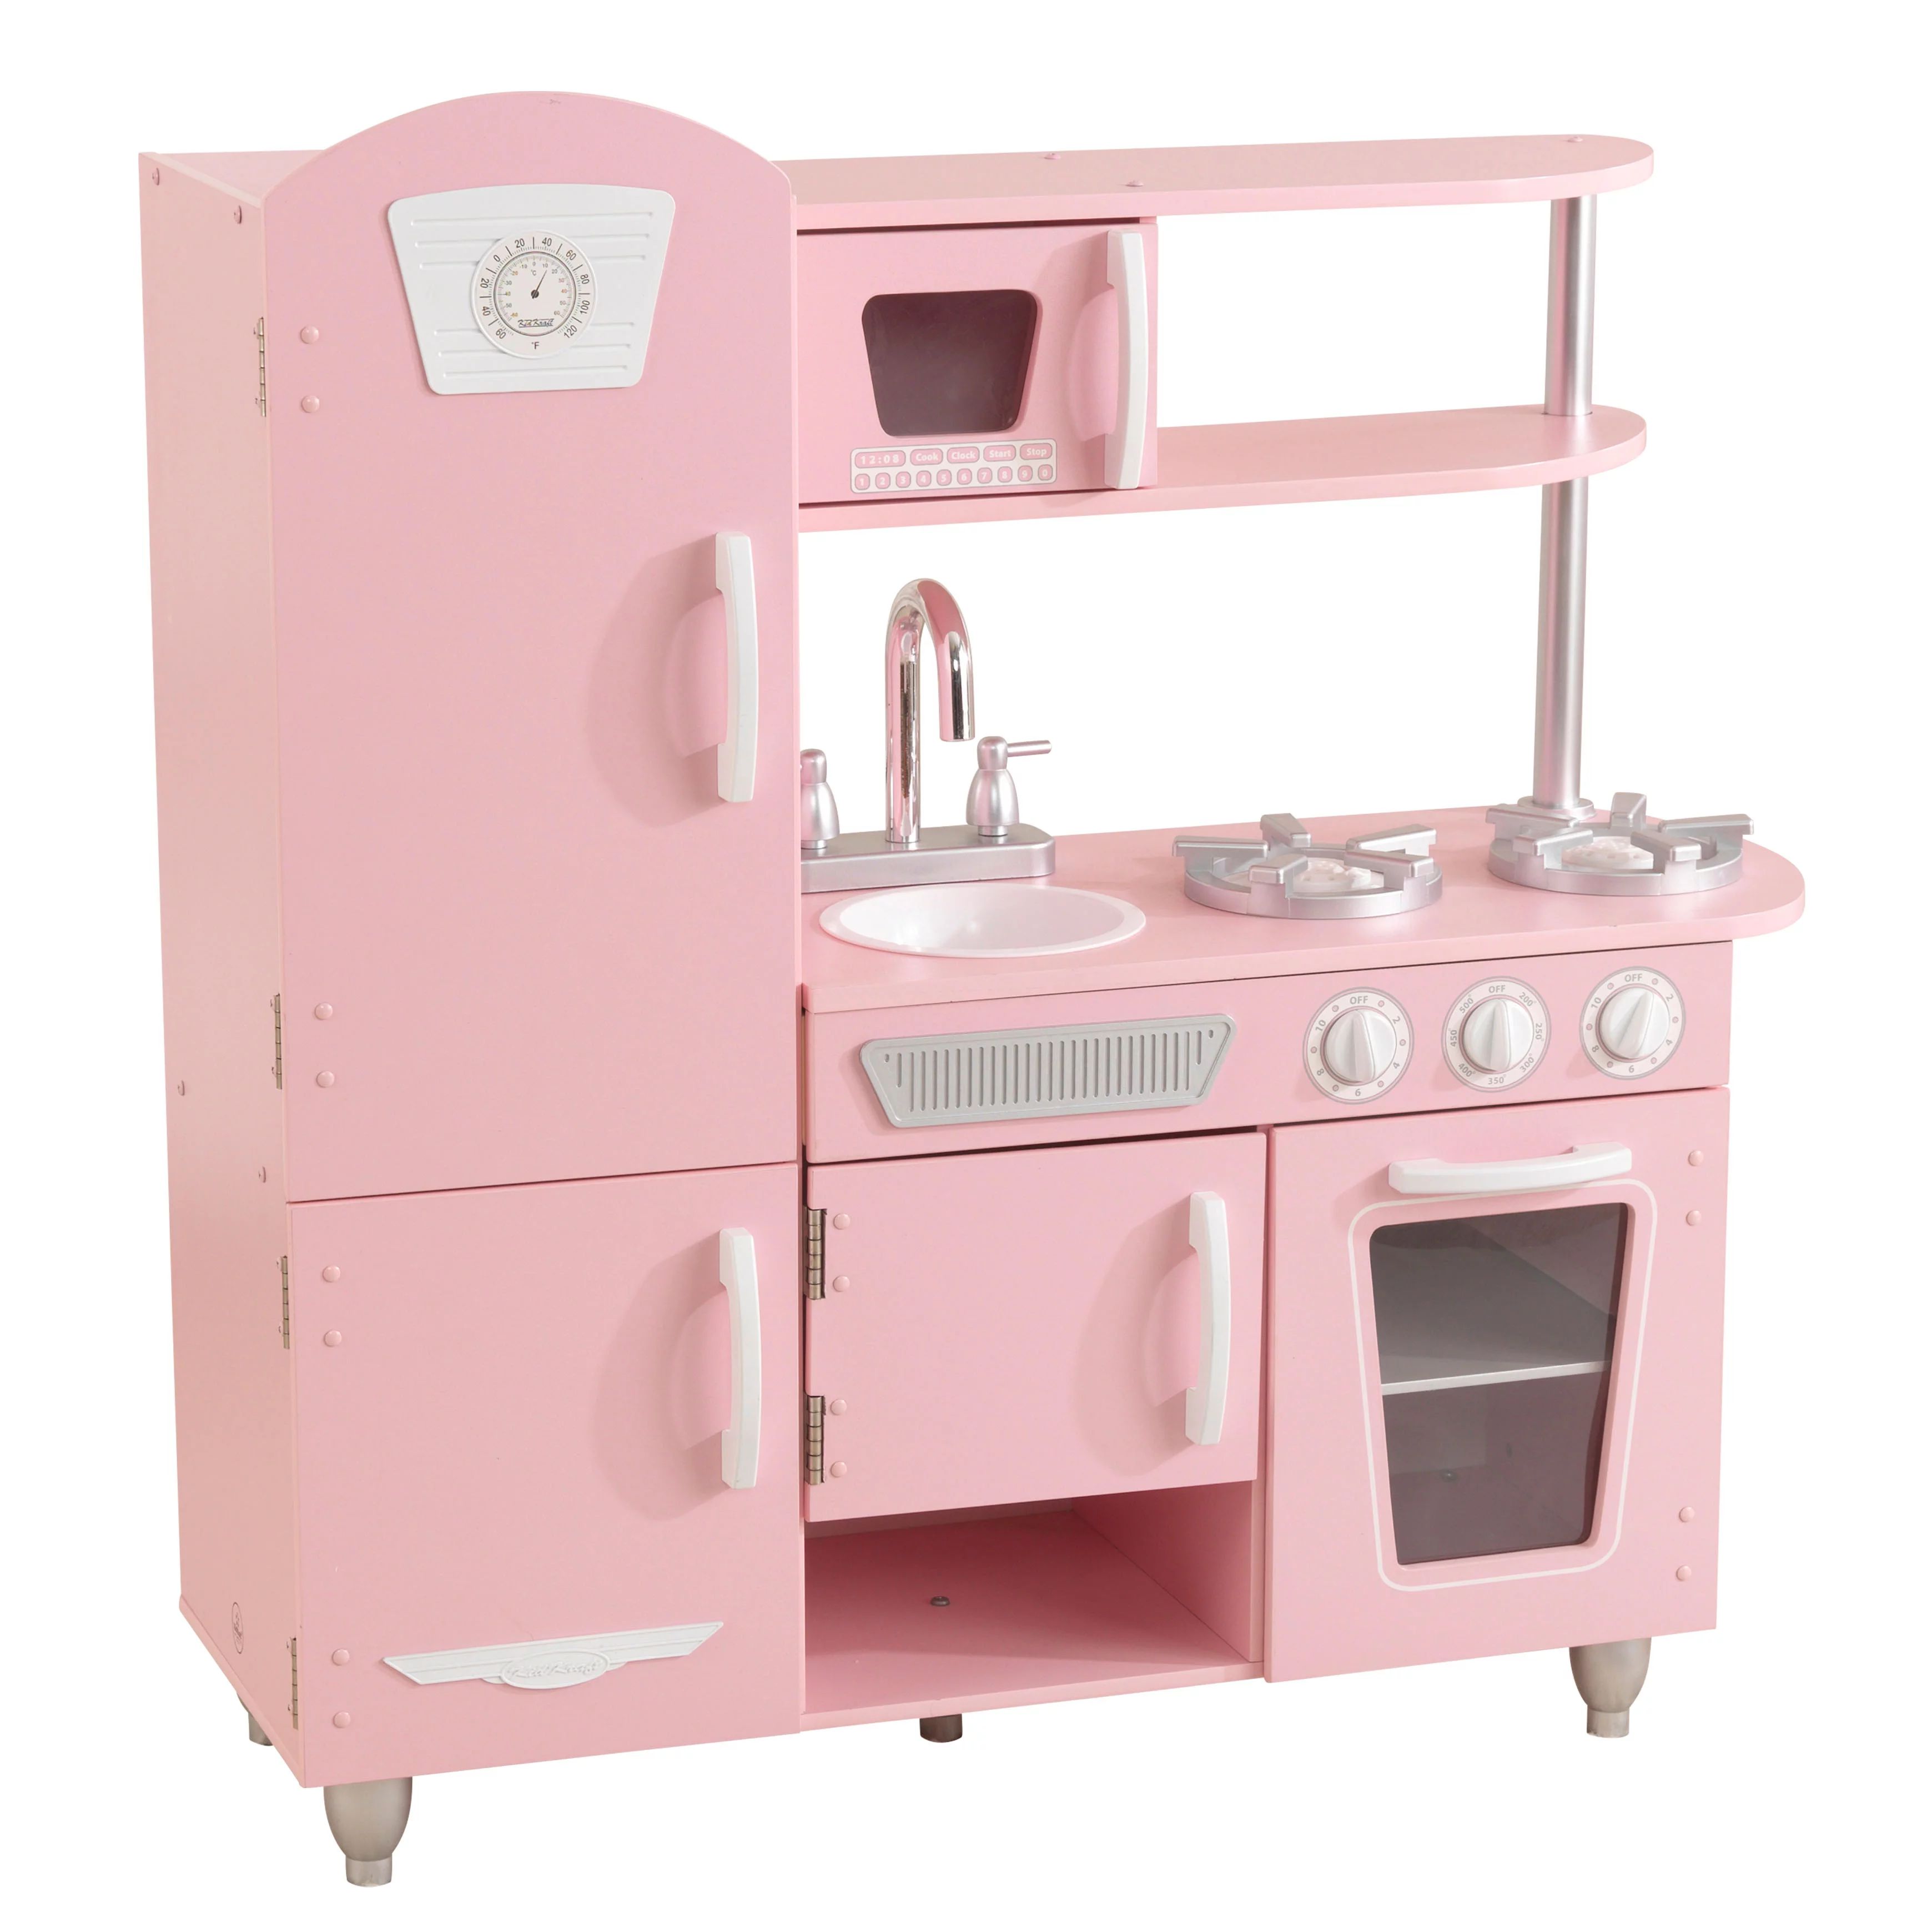 KidKraft Wooden Vintage Play Kitchen - Pink | Walmart (US)